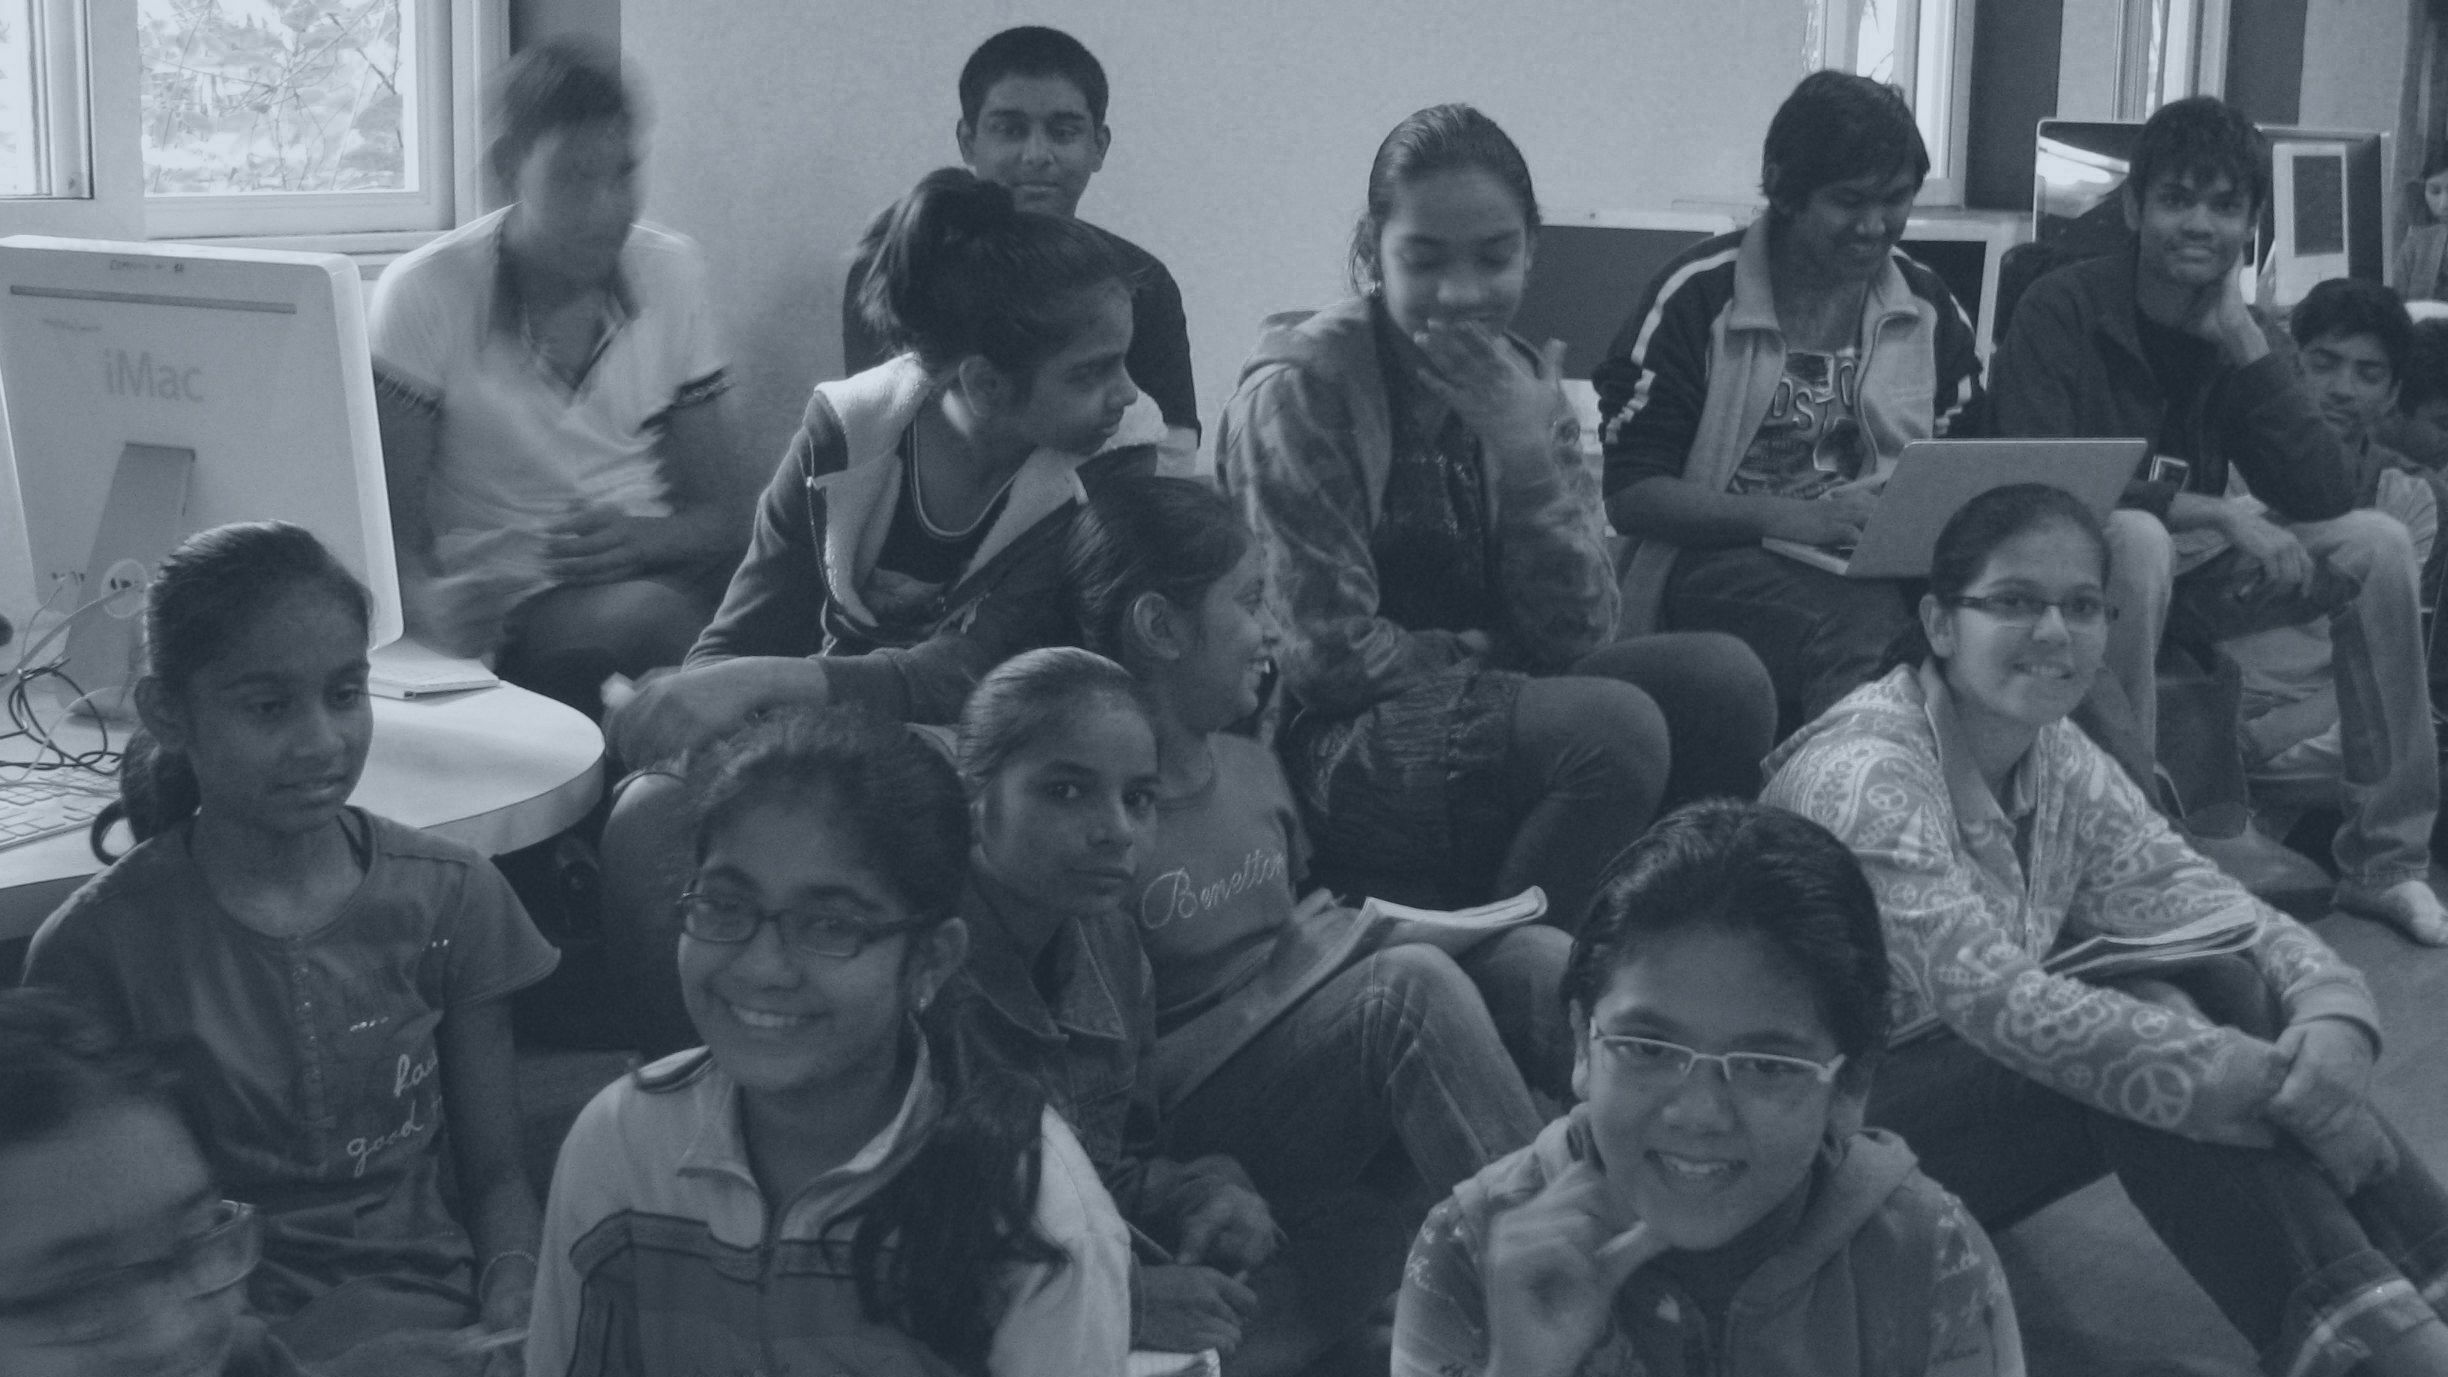 Pupils at Mahatma Gandhi International School